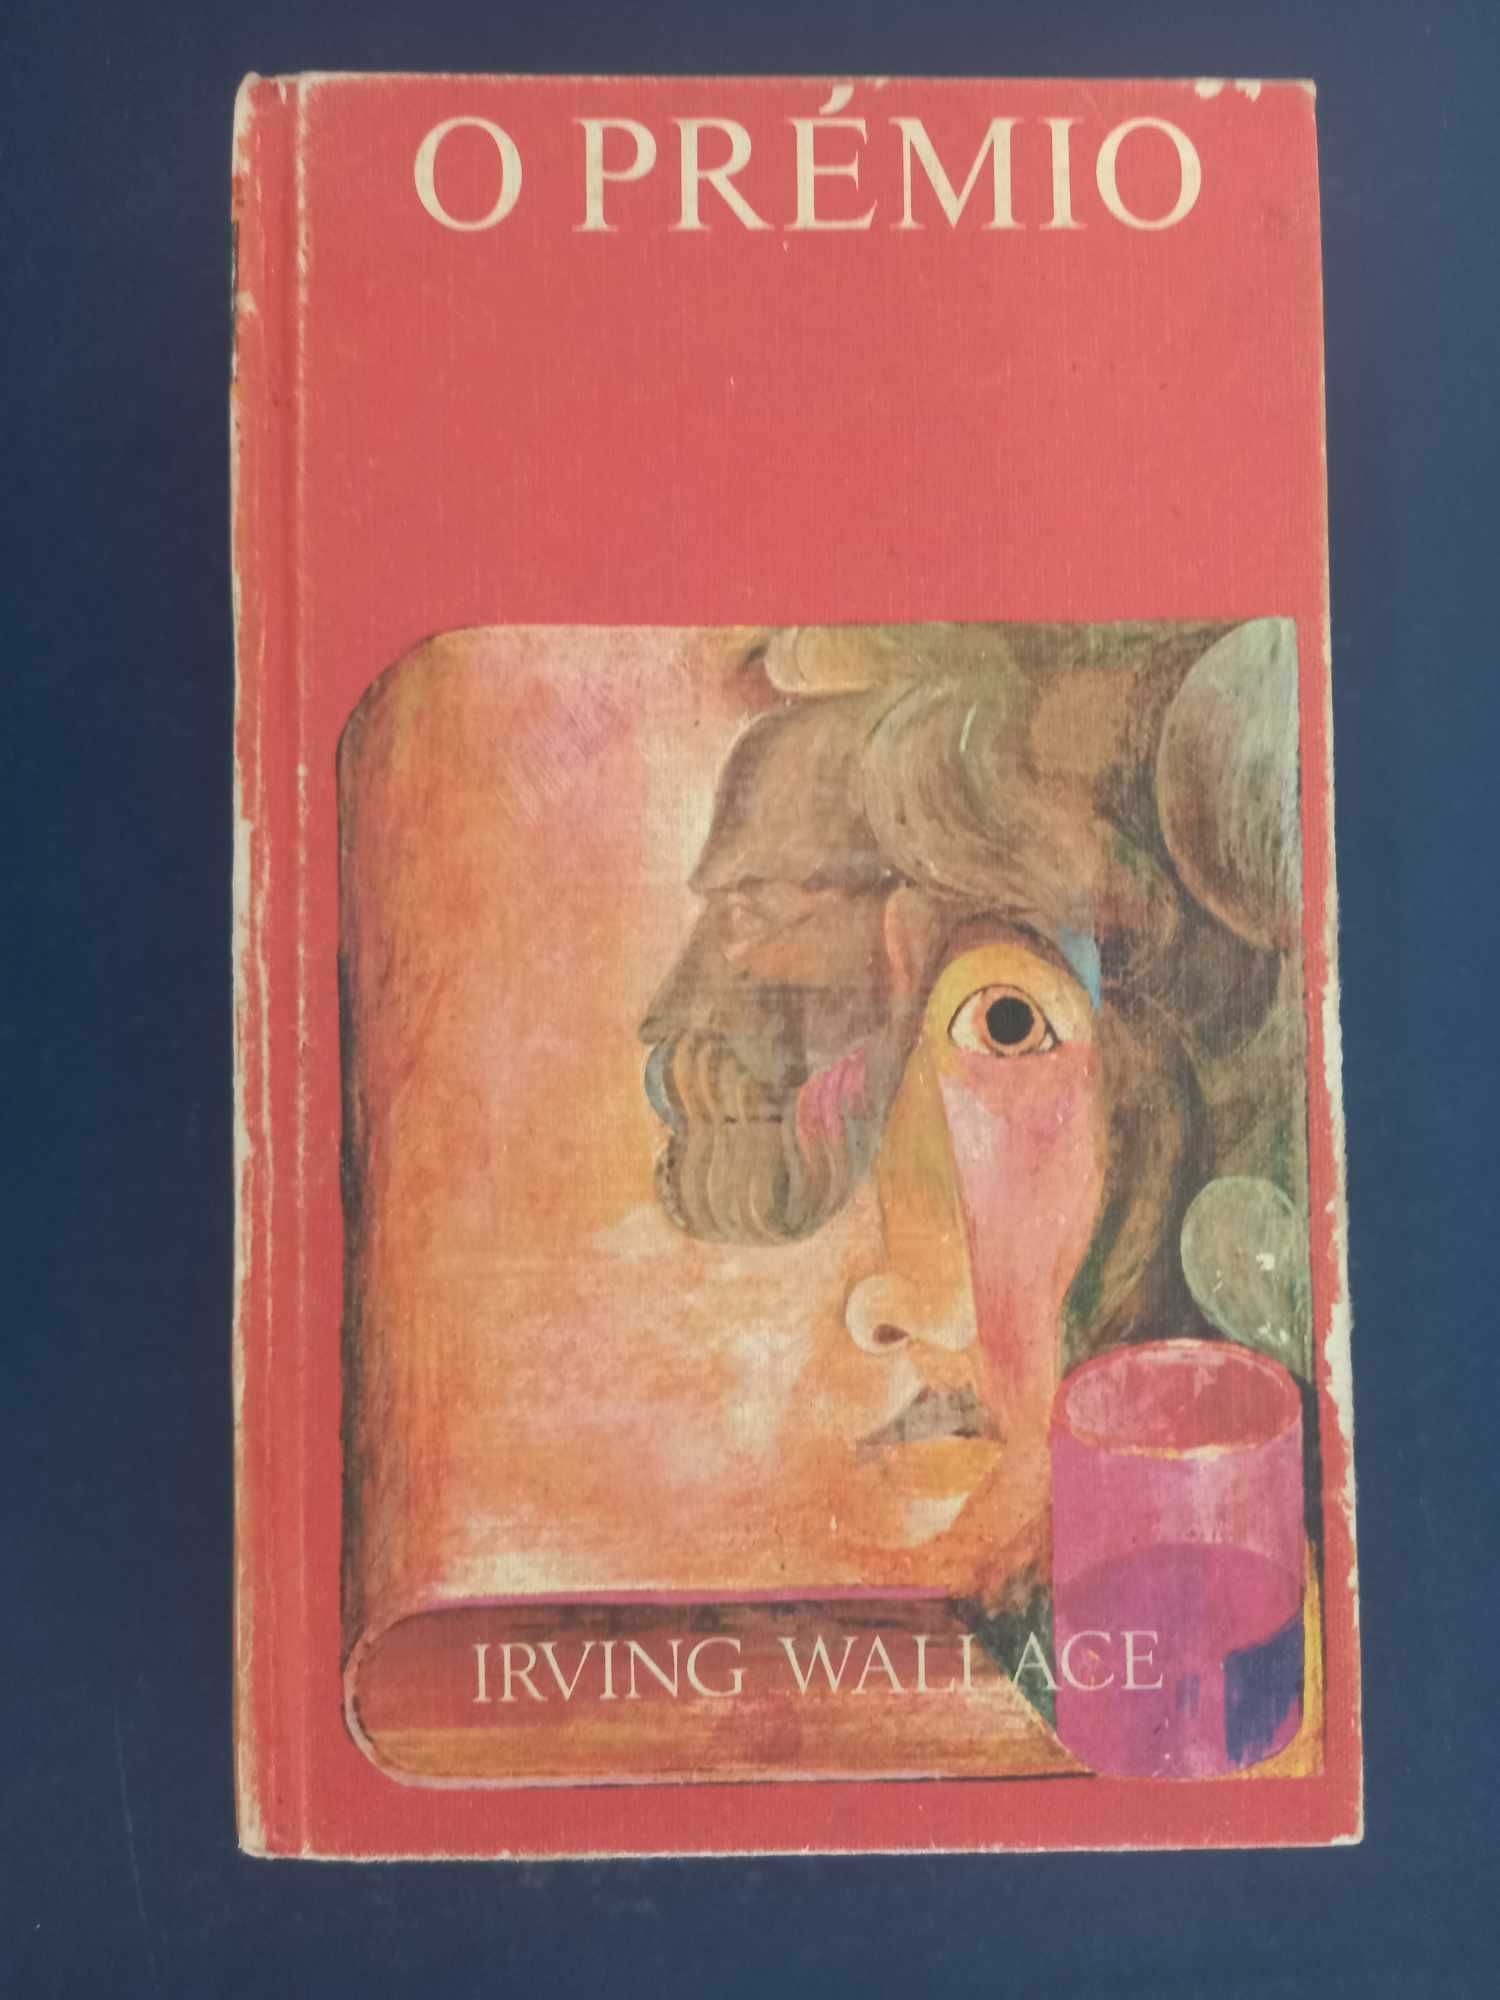 Livro O Prémio (Irving Wallace)